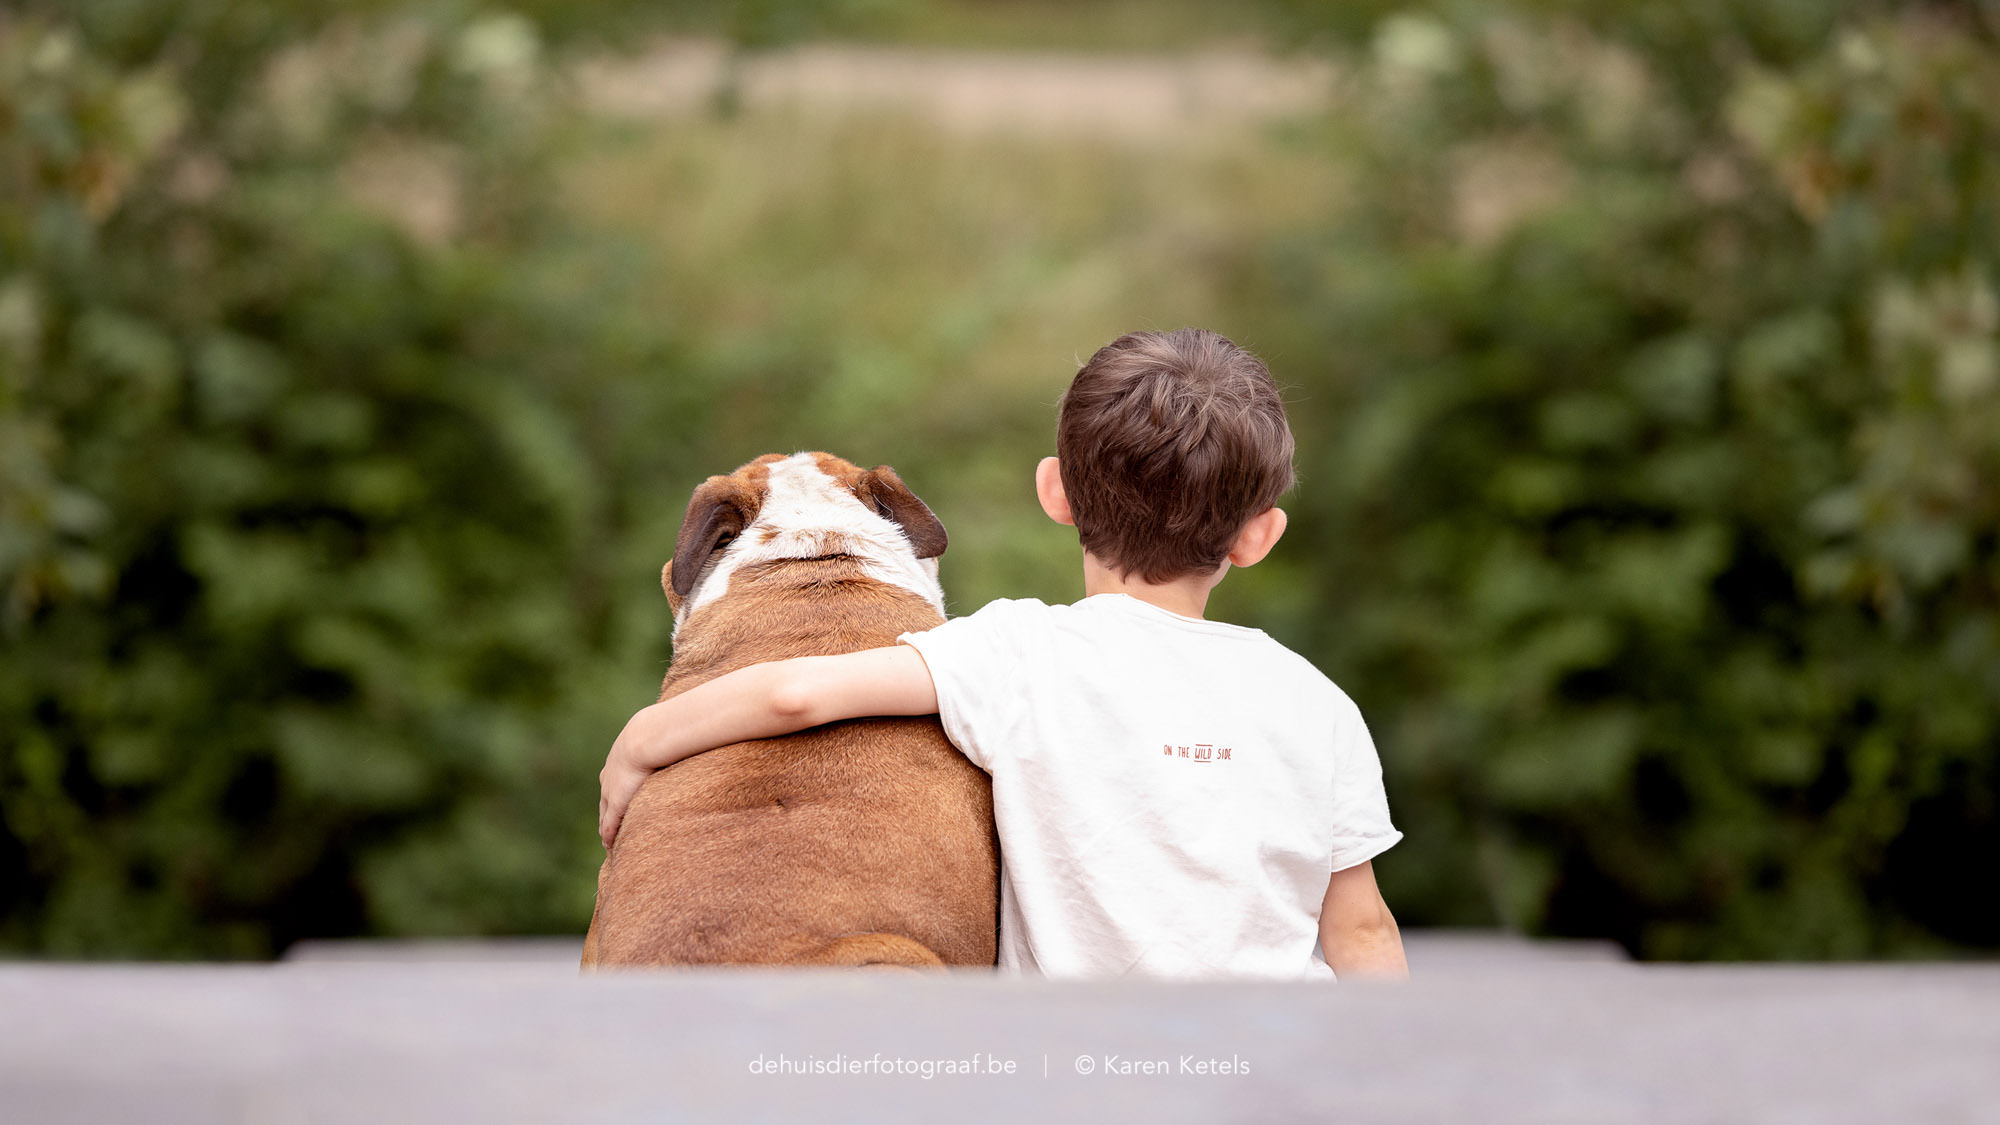 Portret van een jongen met zijn arm rond zijn beste vriend; een Engelse Bulldog. Portret door De Huisdierfotograaf